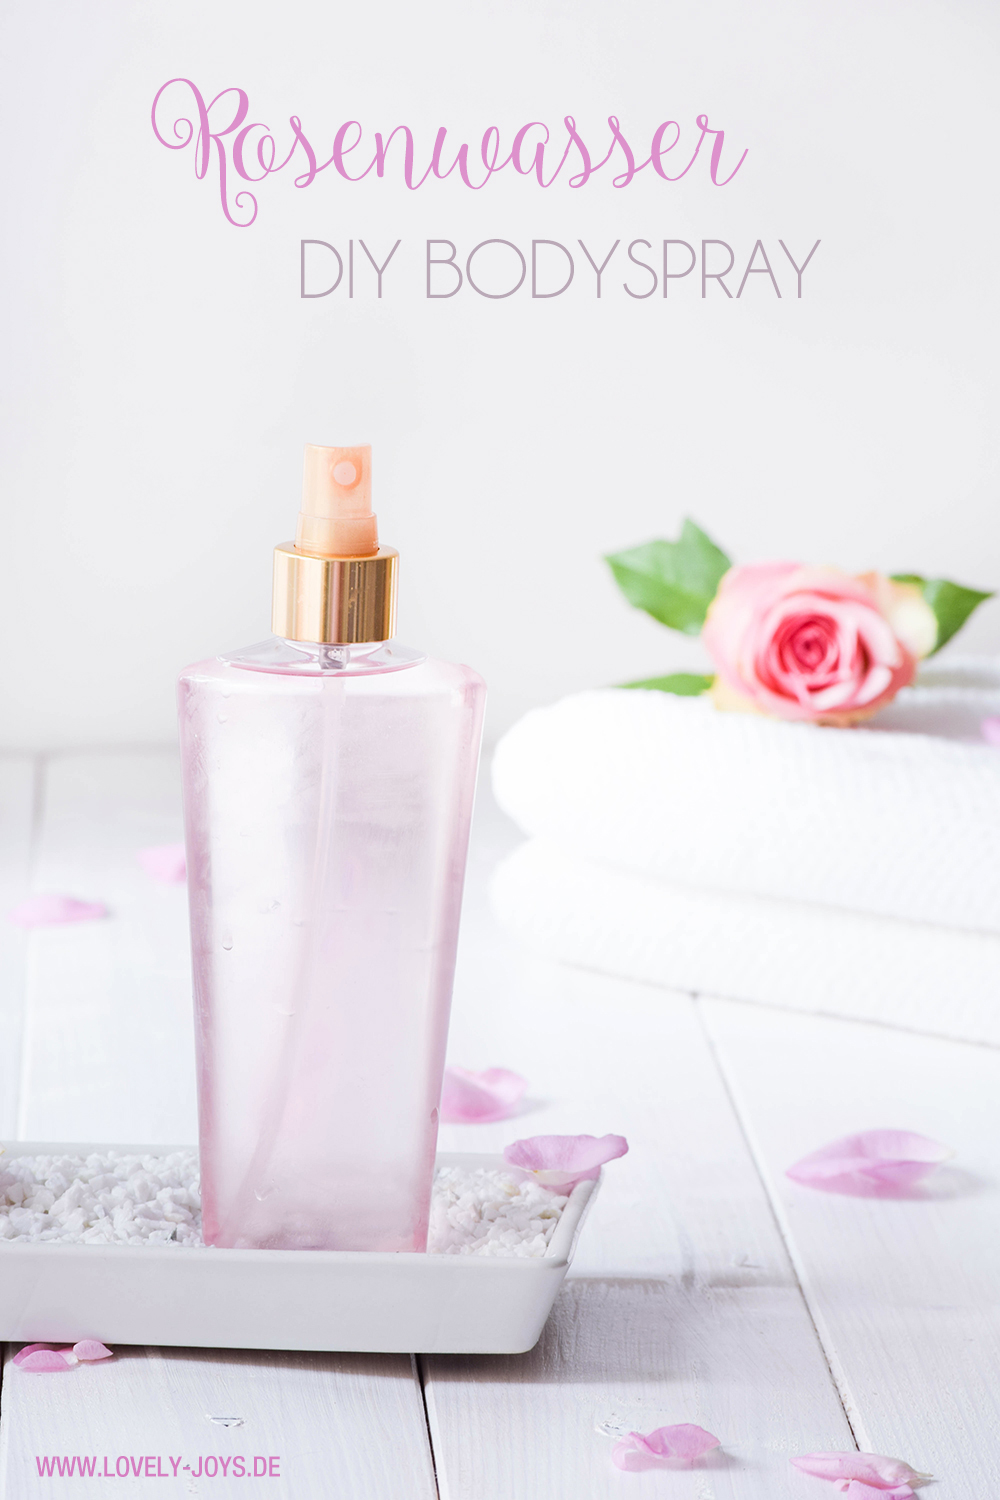 Rosenwasser Body Spray DIY Anleitung zum selber machen und herstellen